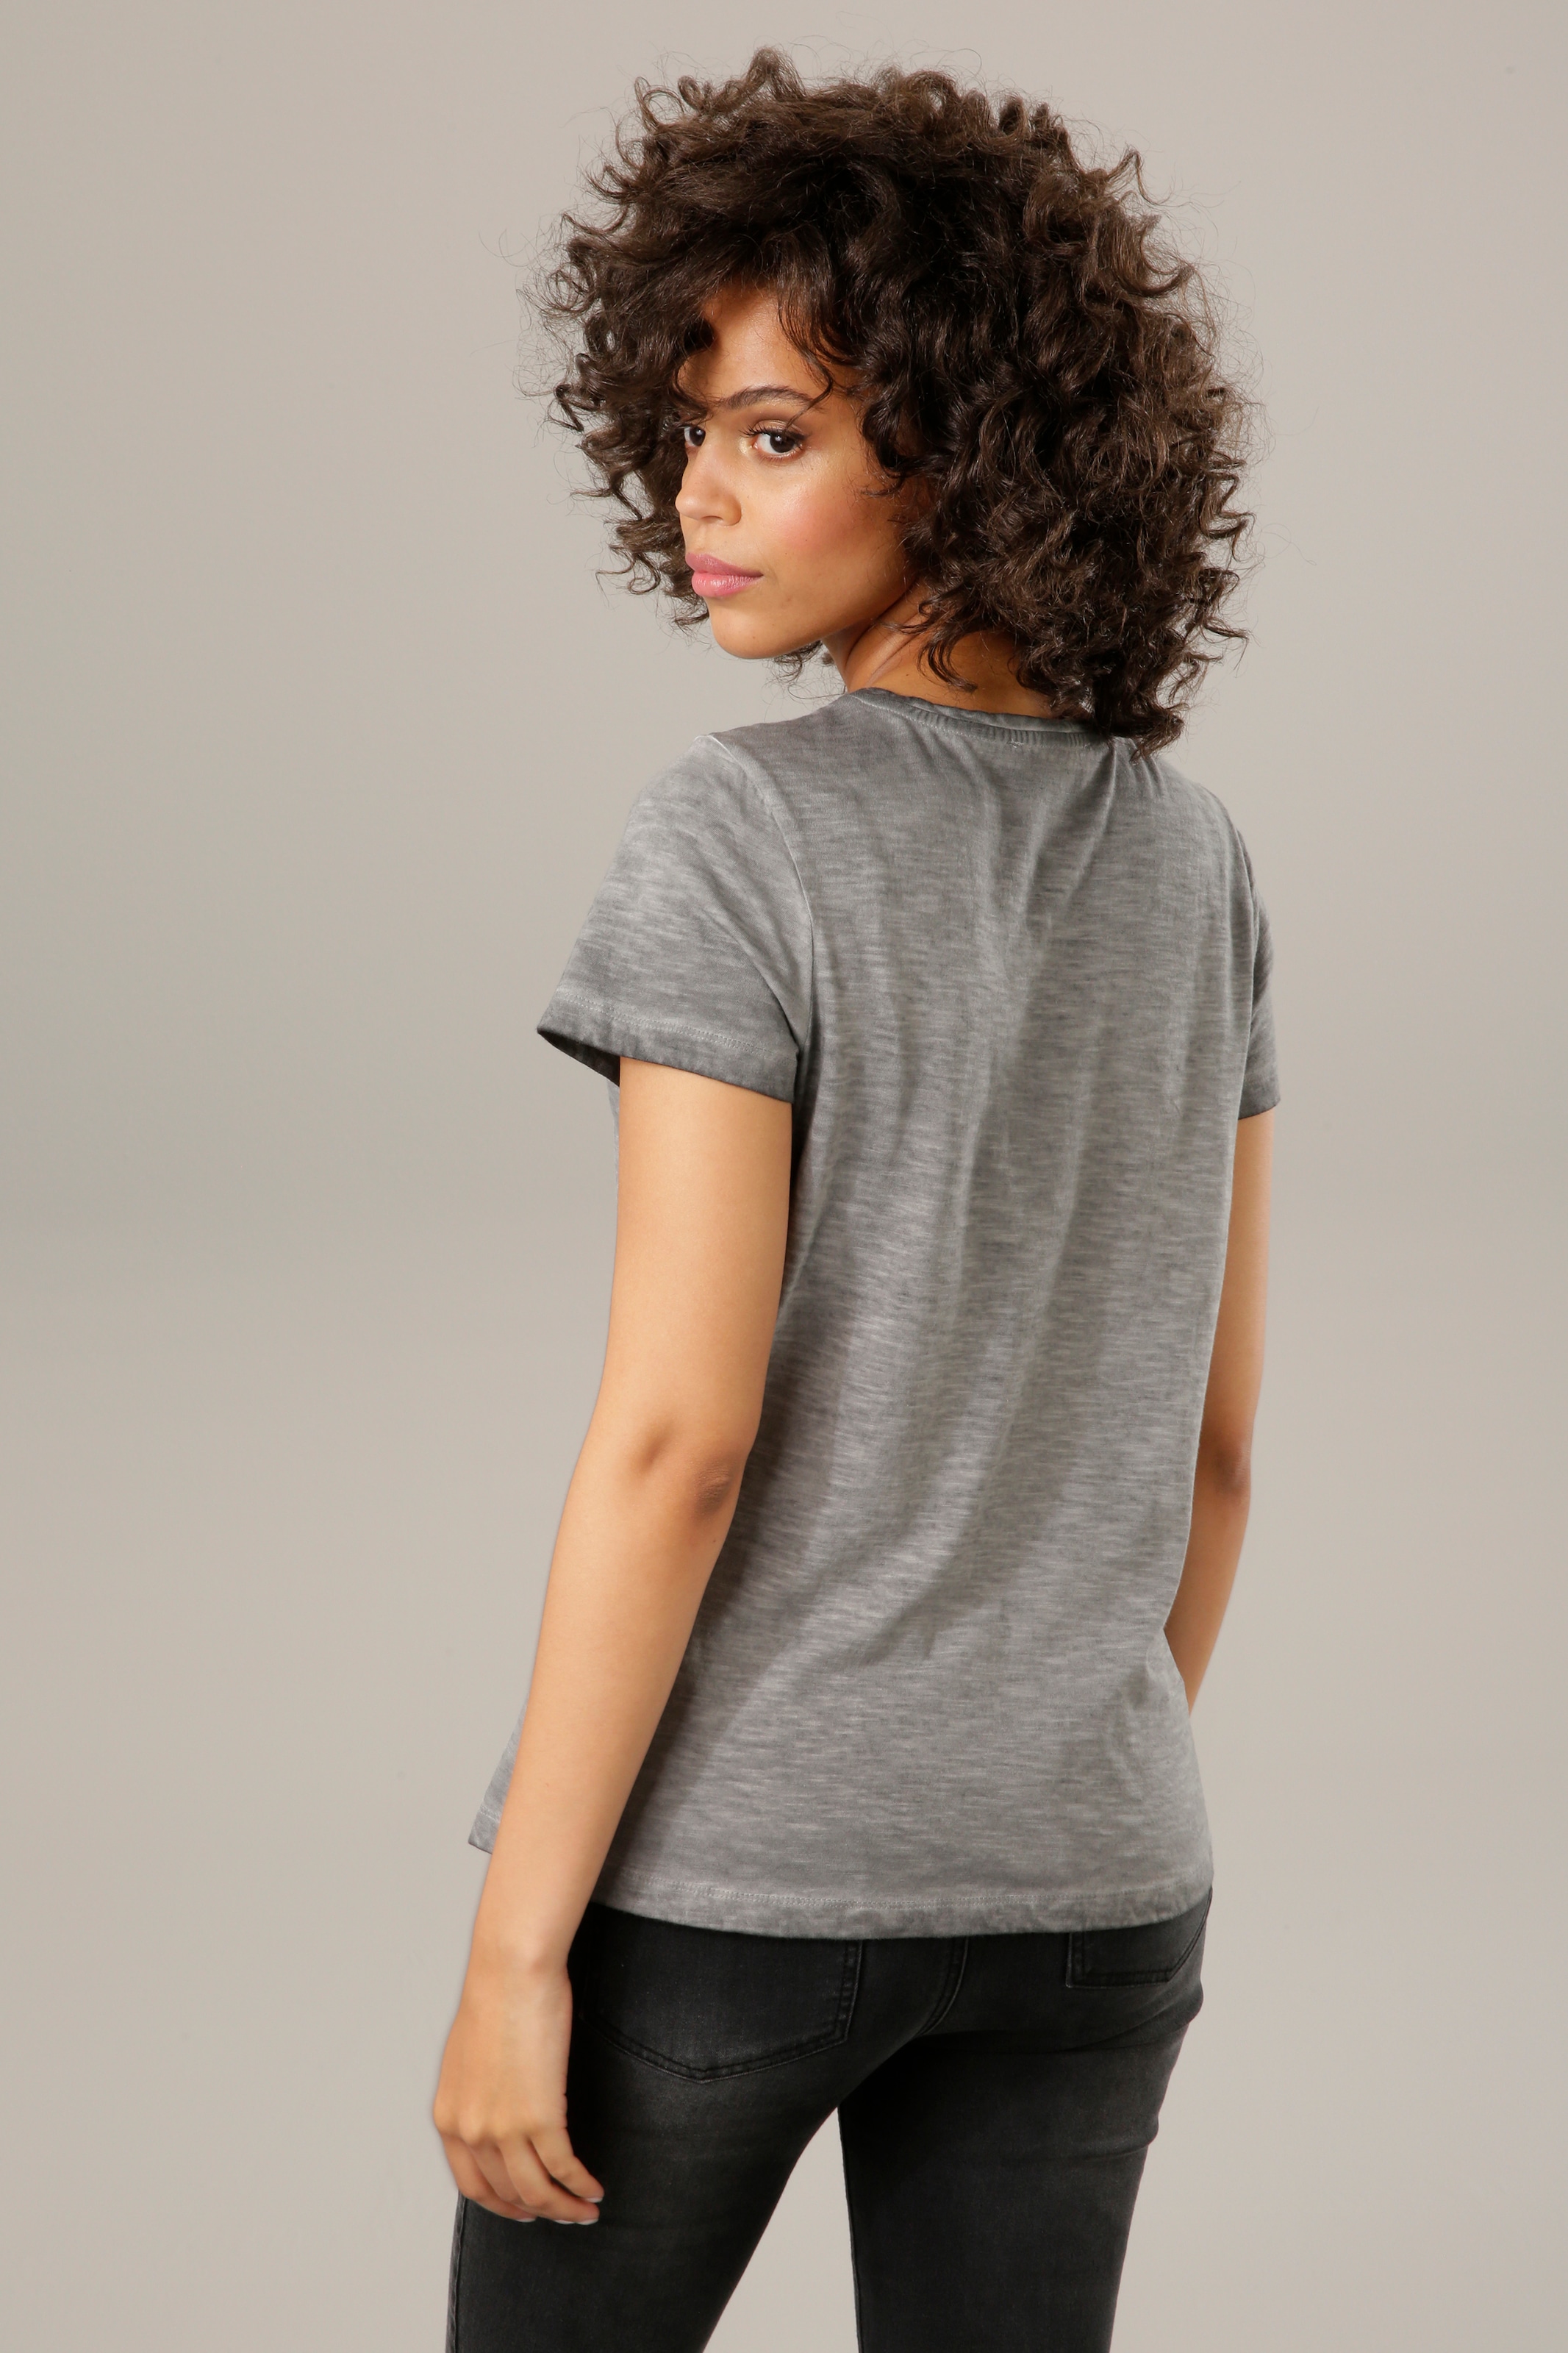 Aniston CASUAL T-Shirt, mit Glitzersteinchen verzierter Frontdruck im OTTO  Online Shop